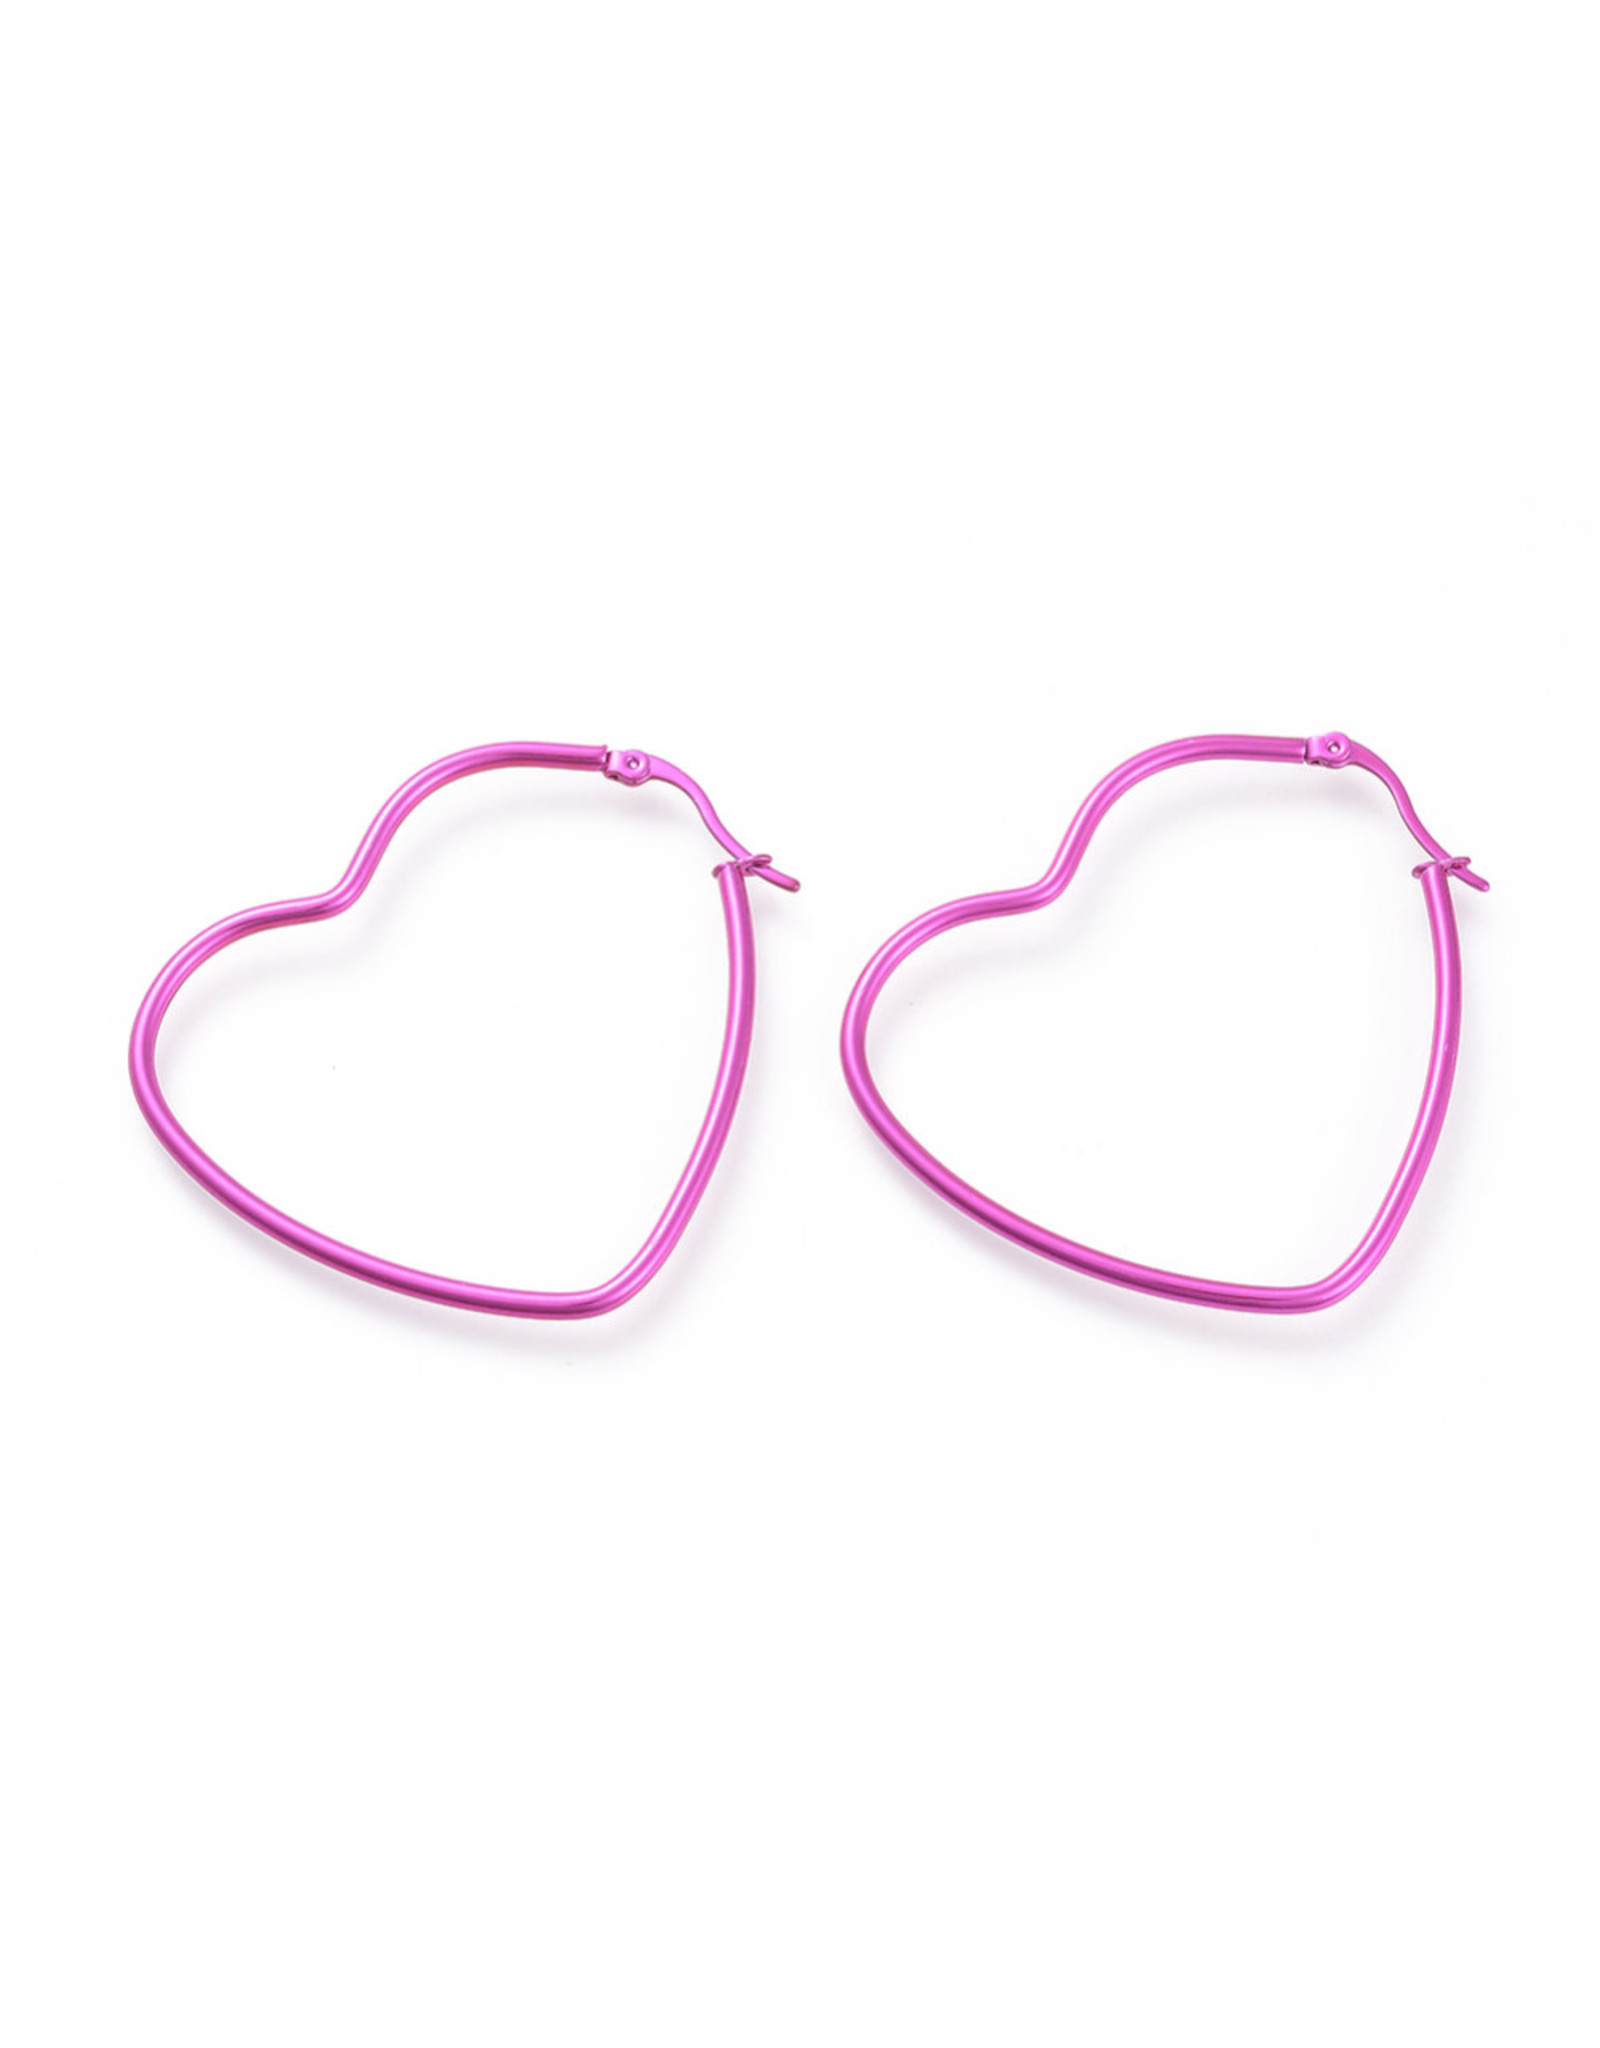 Hoop Earring Heart 52x46mm Pink Stainless Steel  x1 Pair